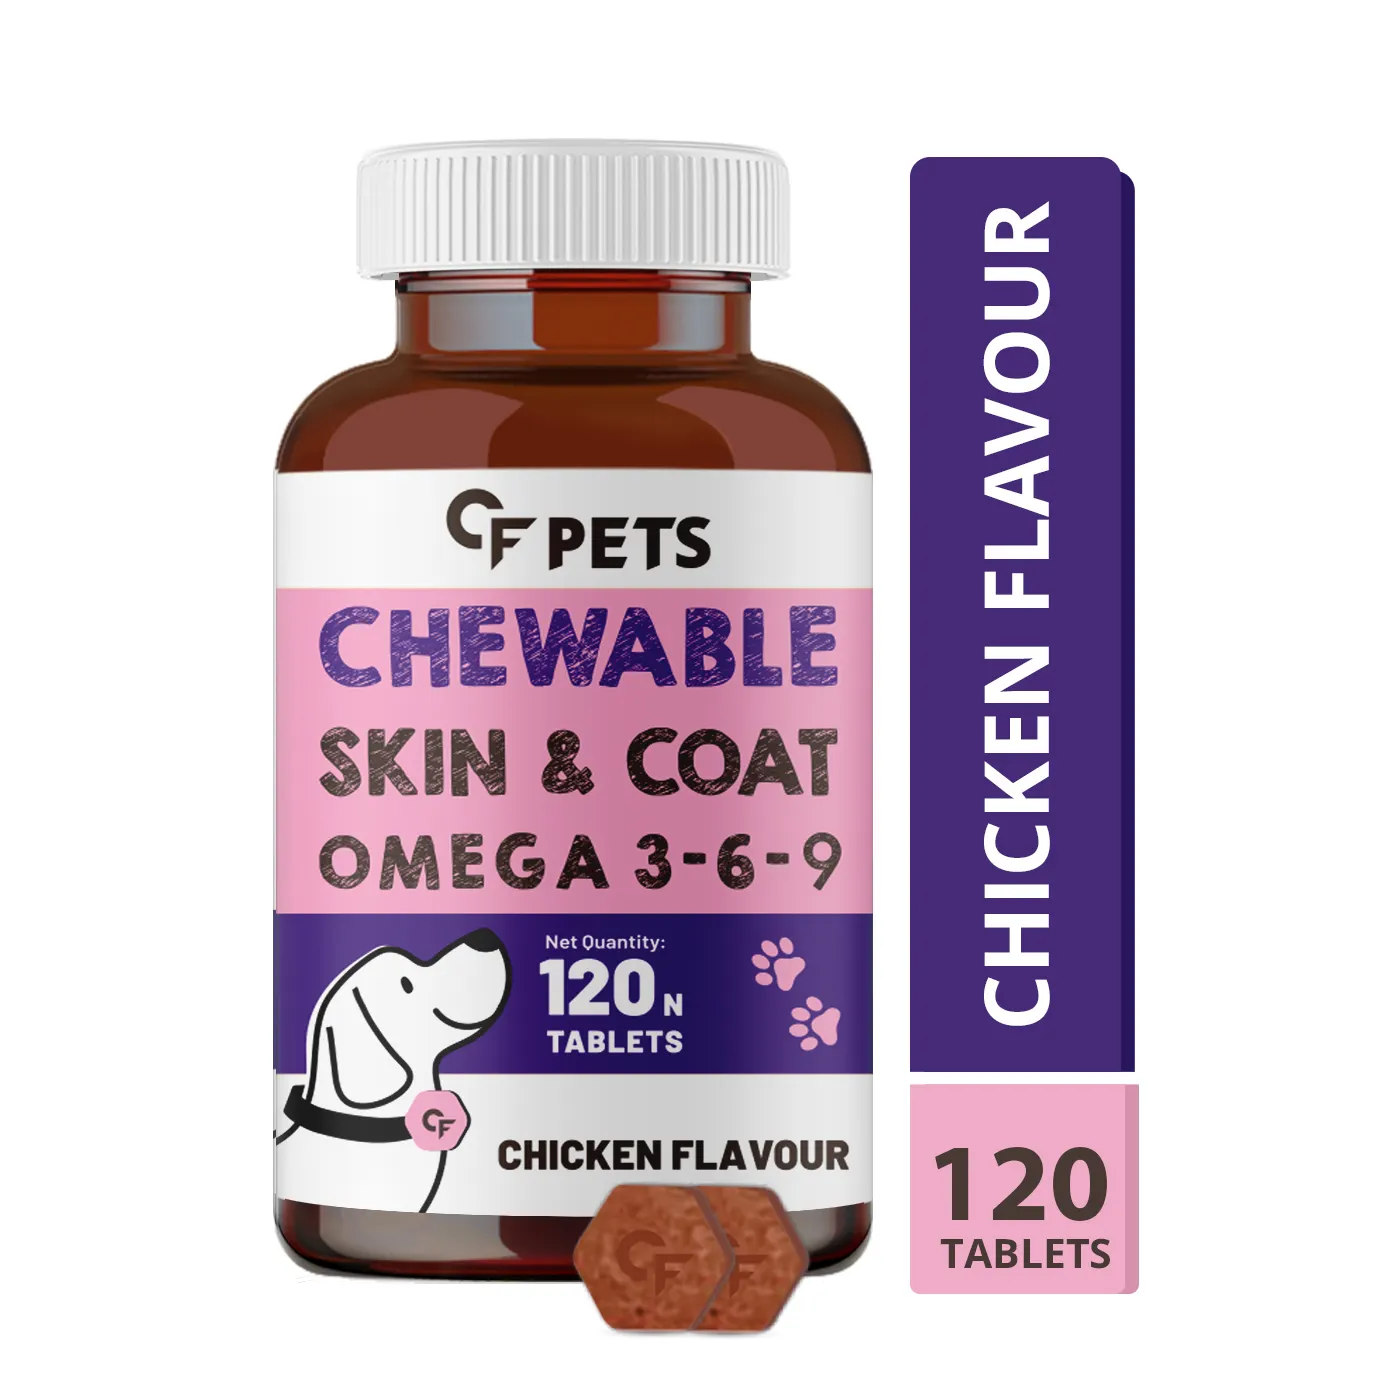 Veg Omega 3 Algal ha, 피부 건강 & 빛나는 외투를 위한 비오틴 및 비타민 c를 가진 개 & 고양이를 위한 씹을 수 있는 피부와 외투 정제